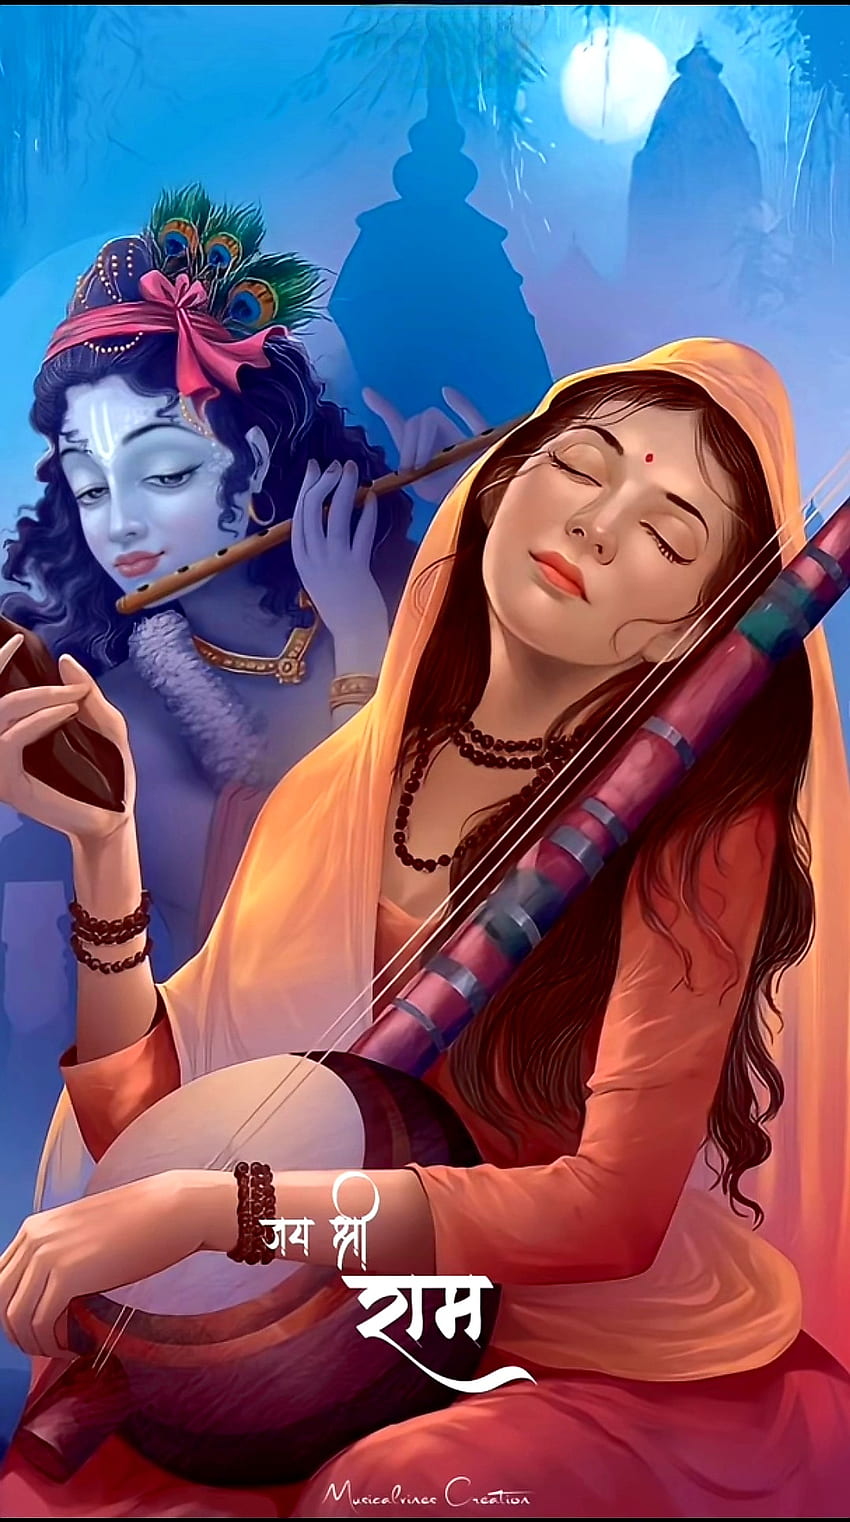 Jai Shree Krishna, Meerabai, romysingh264 wallpaper ponsel HD